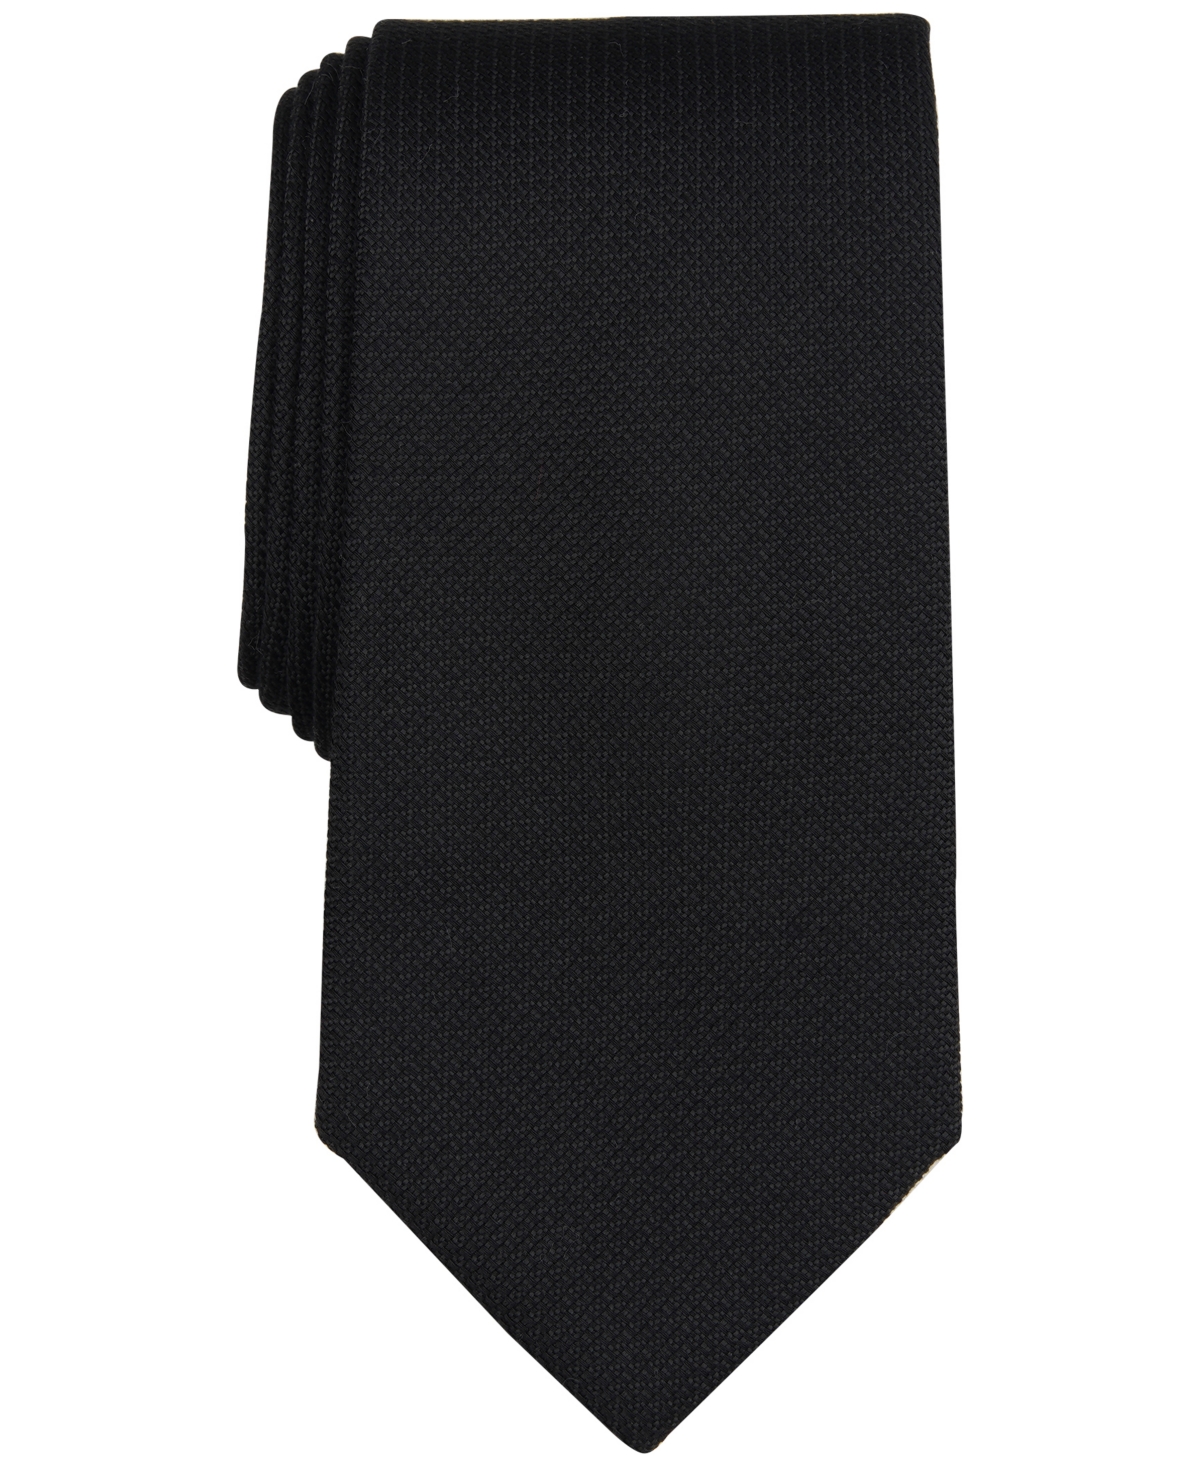 Shop Michael Kors Men's Solid Black Tie